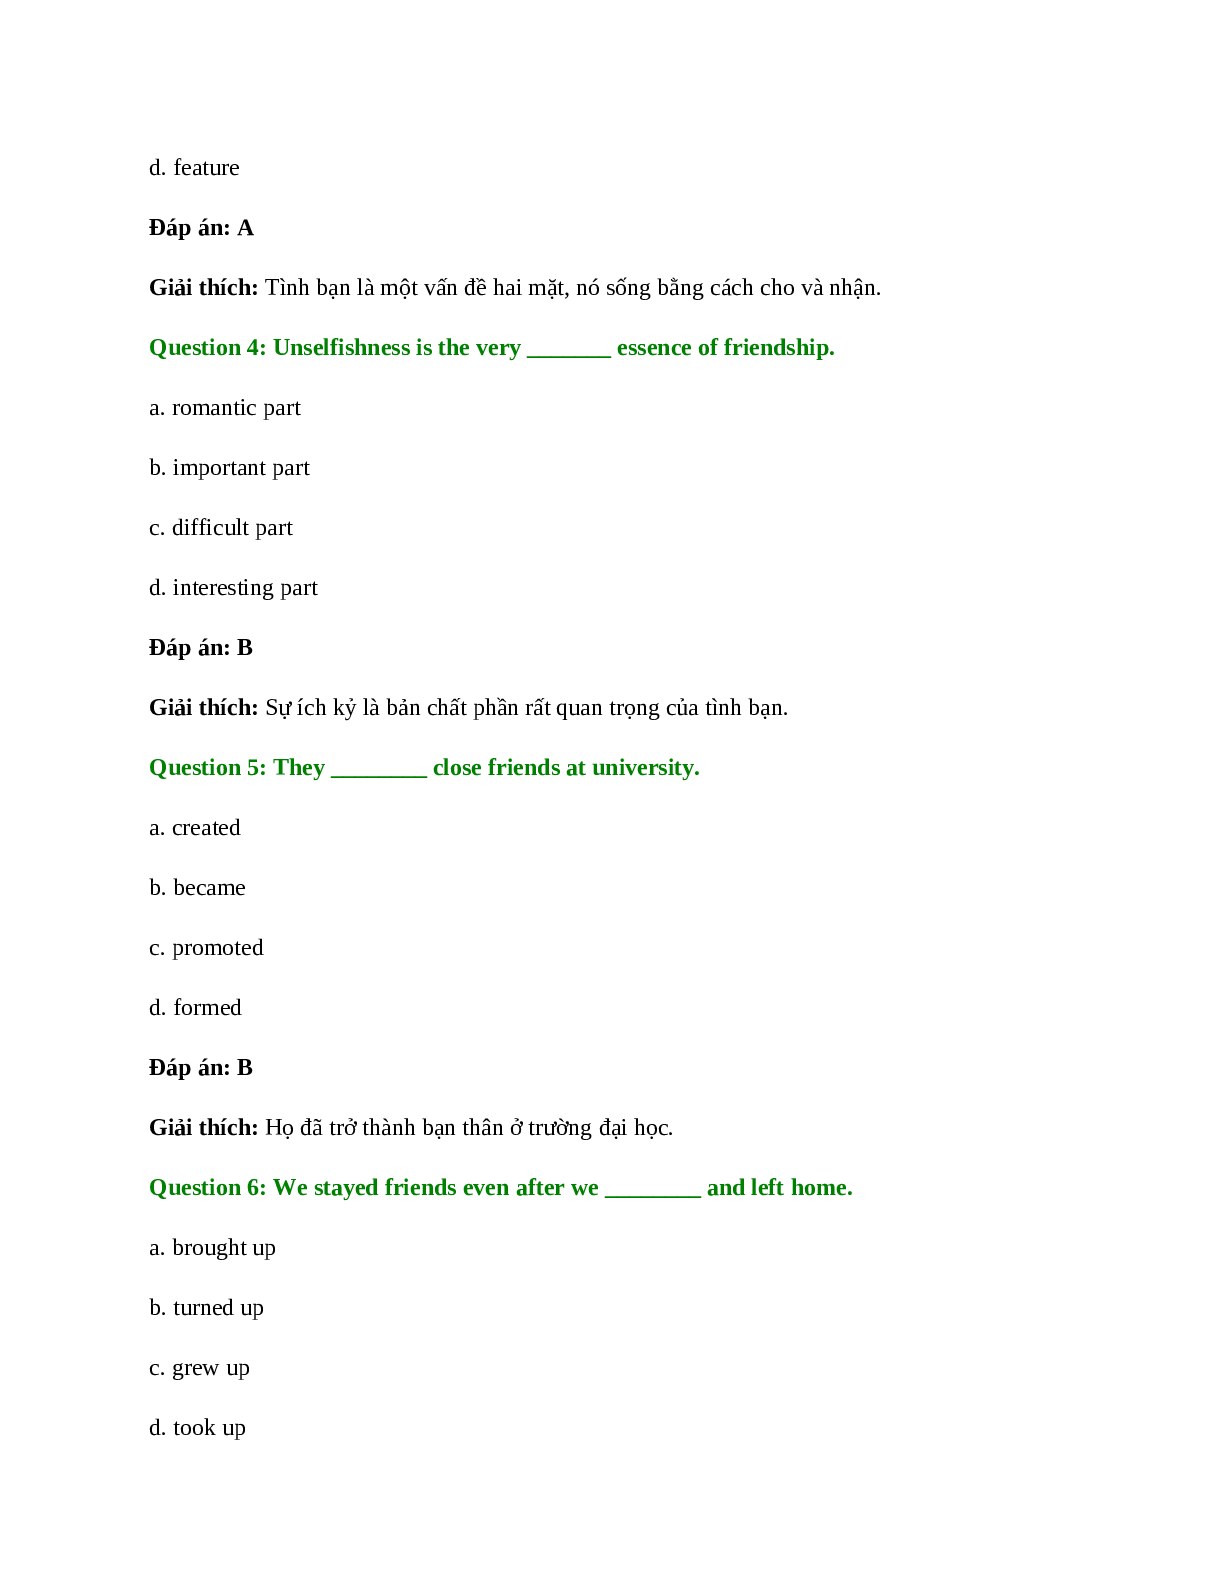 60 câu Trắc nghiệm Tiếng Anh 11 Unit 1 có đáp án 2023: Friendship (trang 7)